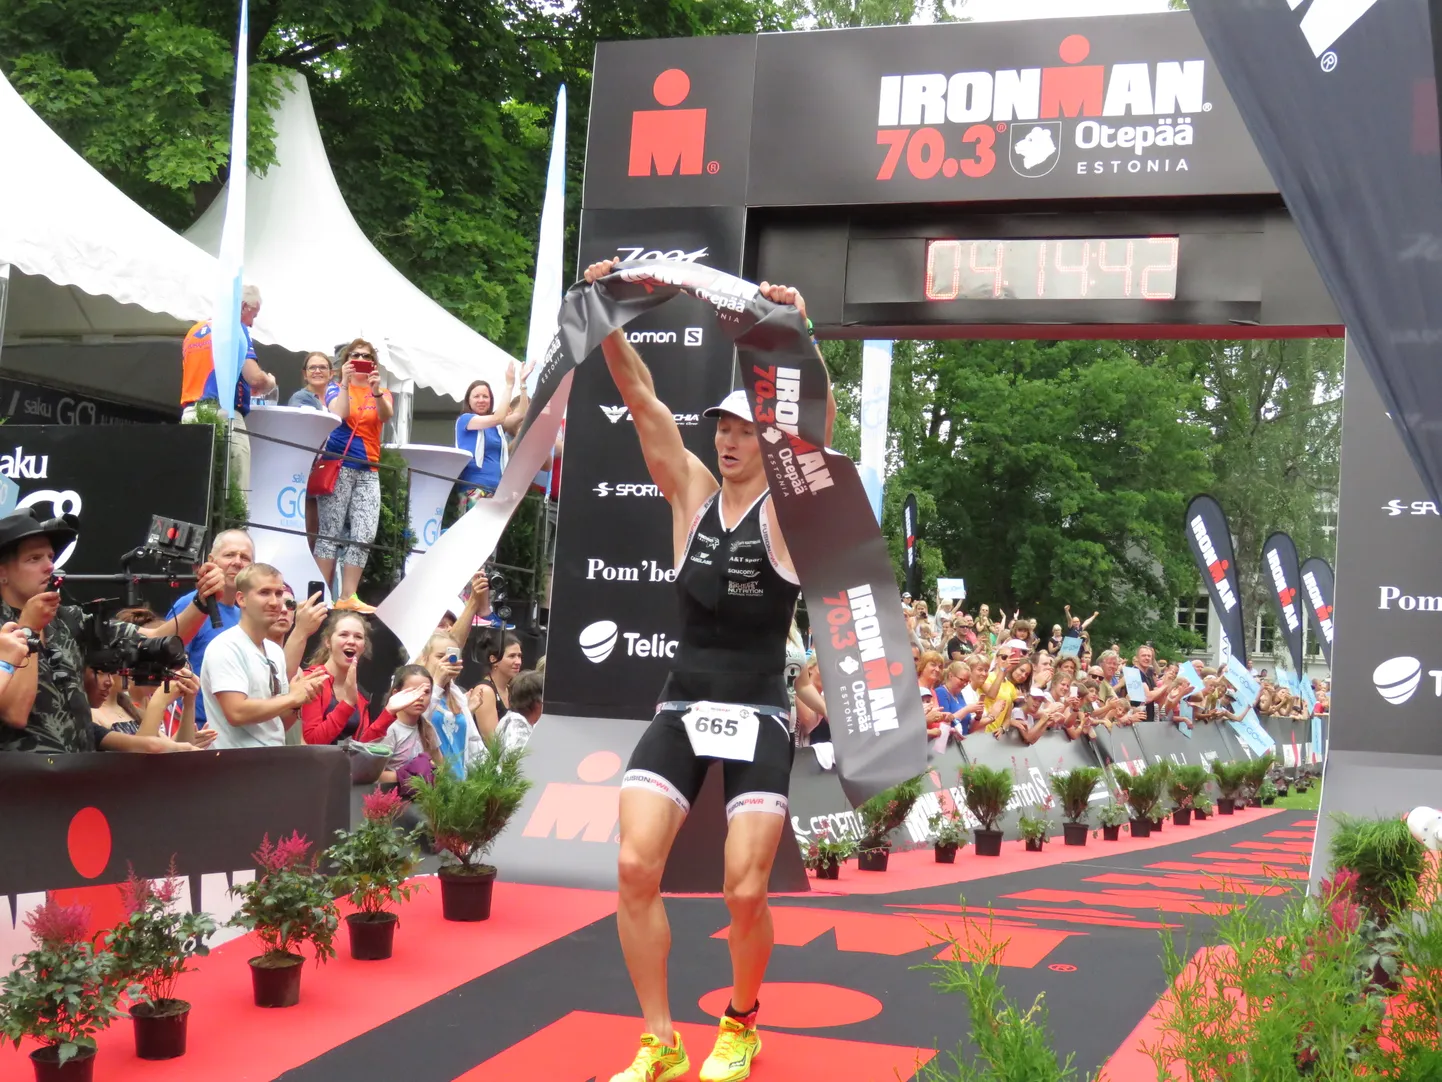 Ironman 70.3 Otepää poolpikk triatlon.